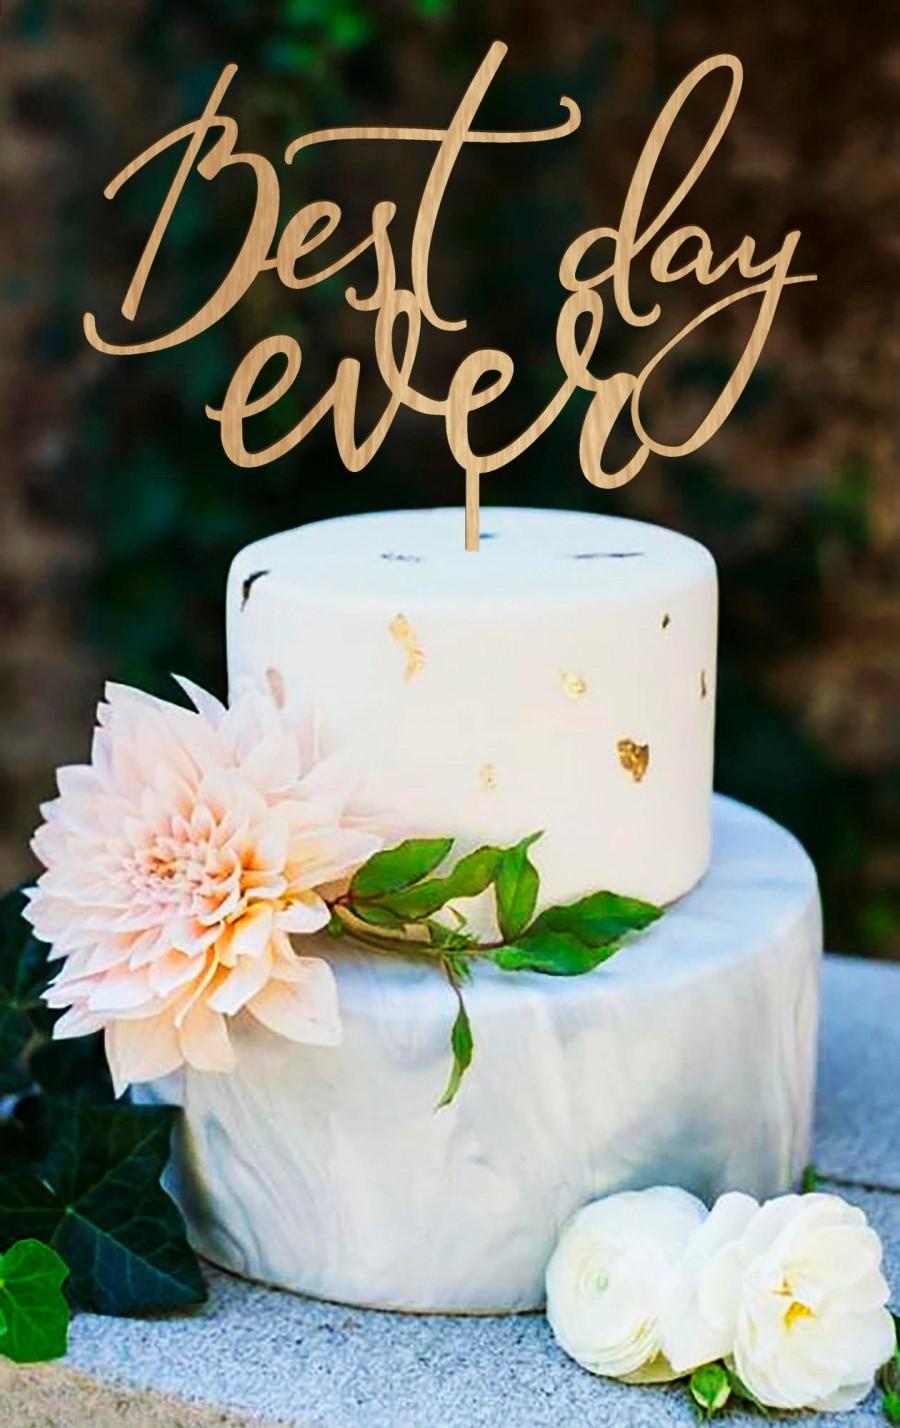 زفاف - Wedding Cake Topper, Best Day Ever, Cake Topper, Custom Cake Topper, Rustic Cake Topper, Gold Cake Topper, Best Day Ever, Wedding Topper